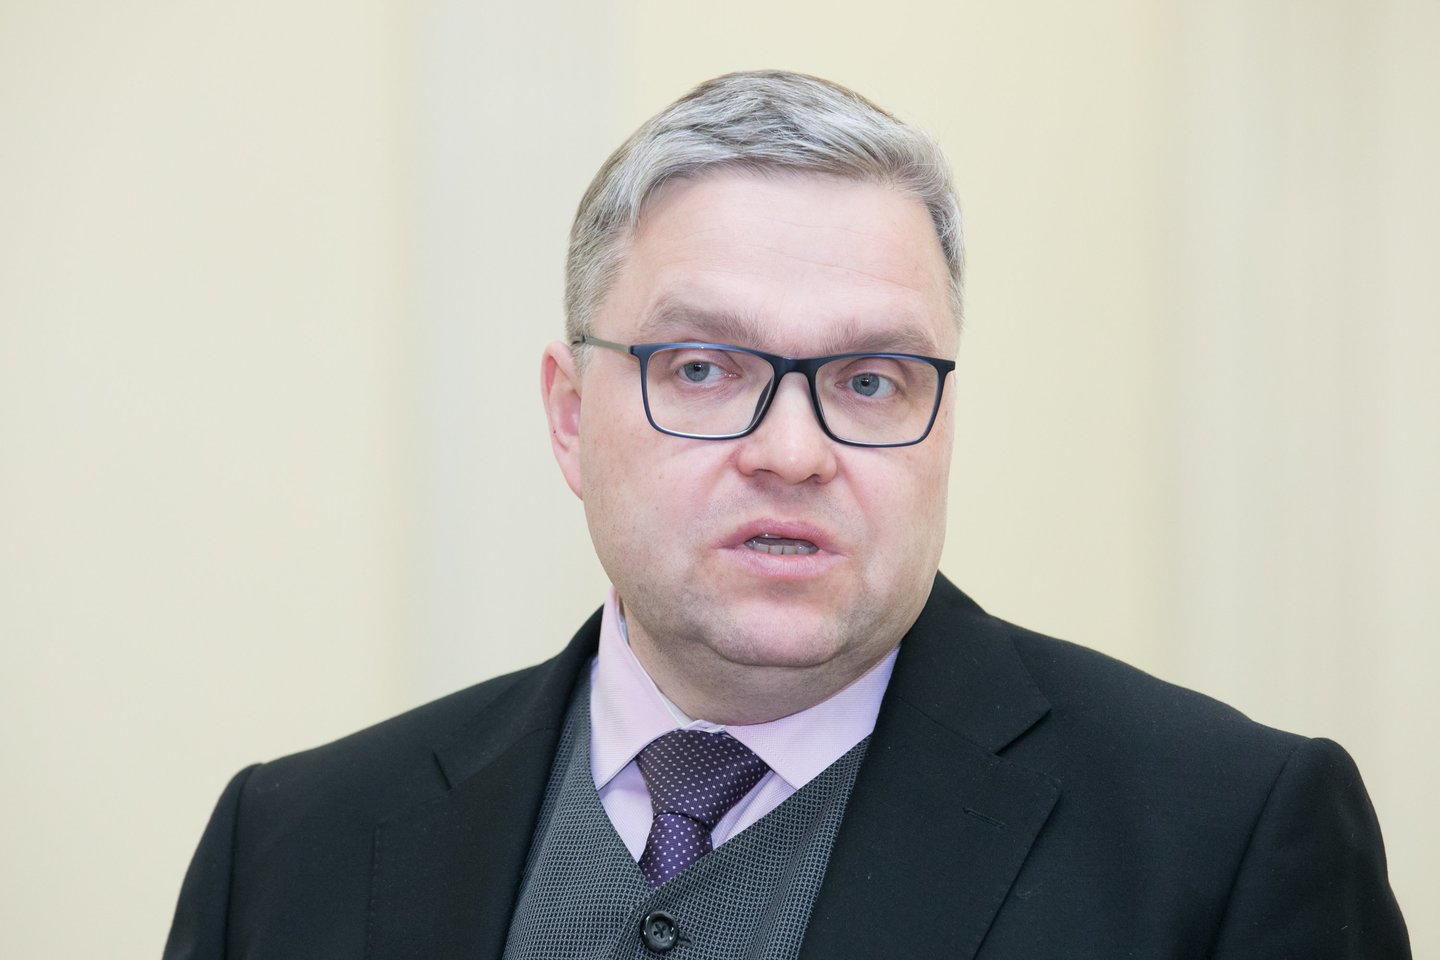 Penktadienį Lietuvos banko (LB) valdybos pirmininkas Vitas Vasiliauskas surengė spaudos konferenciją dėl naujos informacijos pateikimo parlamentiniam tyrimui dėl tarpbankinių palūkanų VILIBOR kitimo.<br>T.Bauro nuotr.